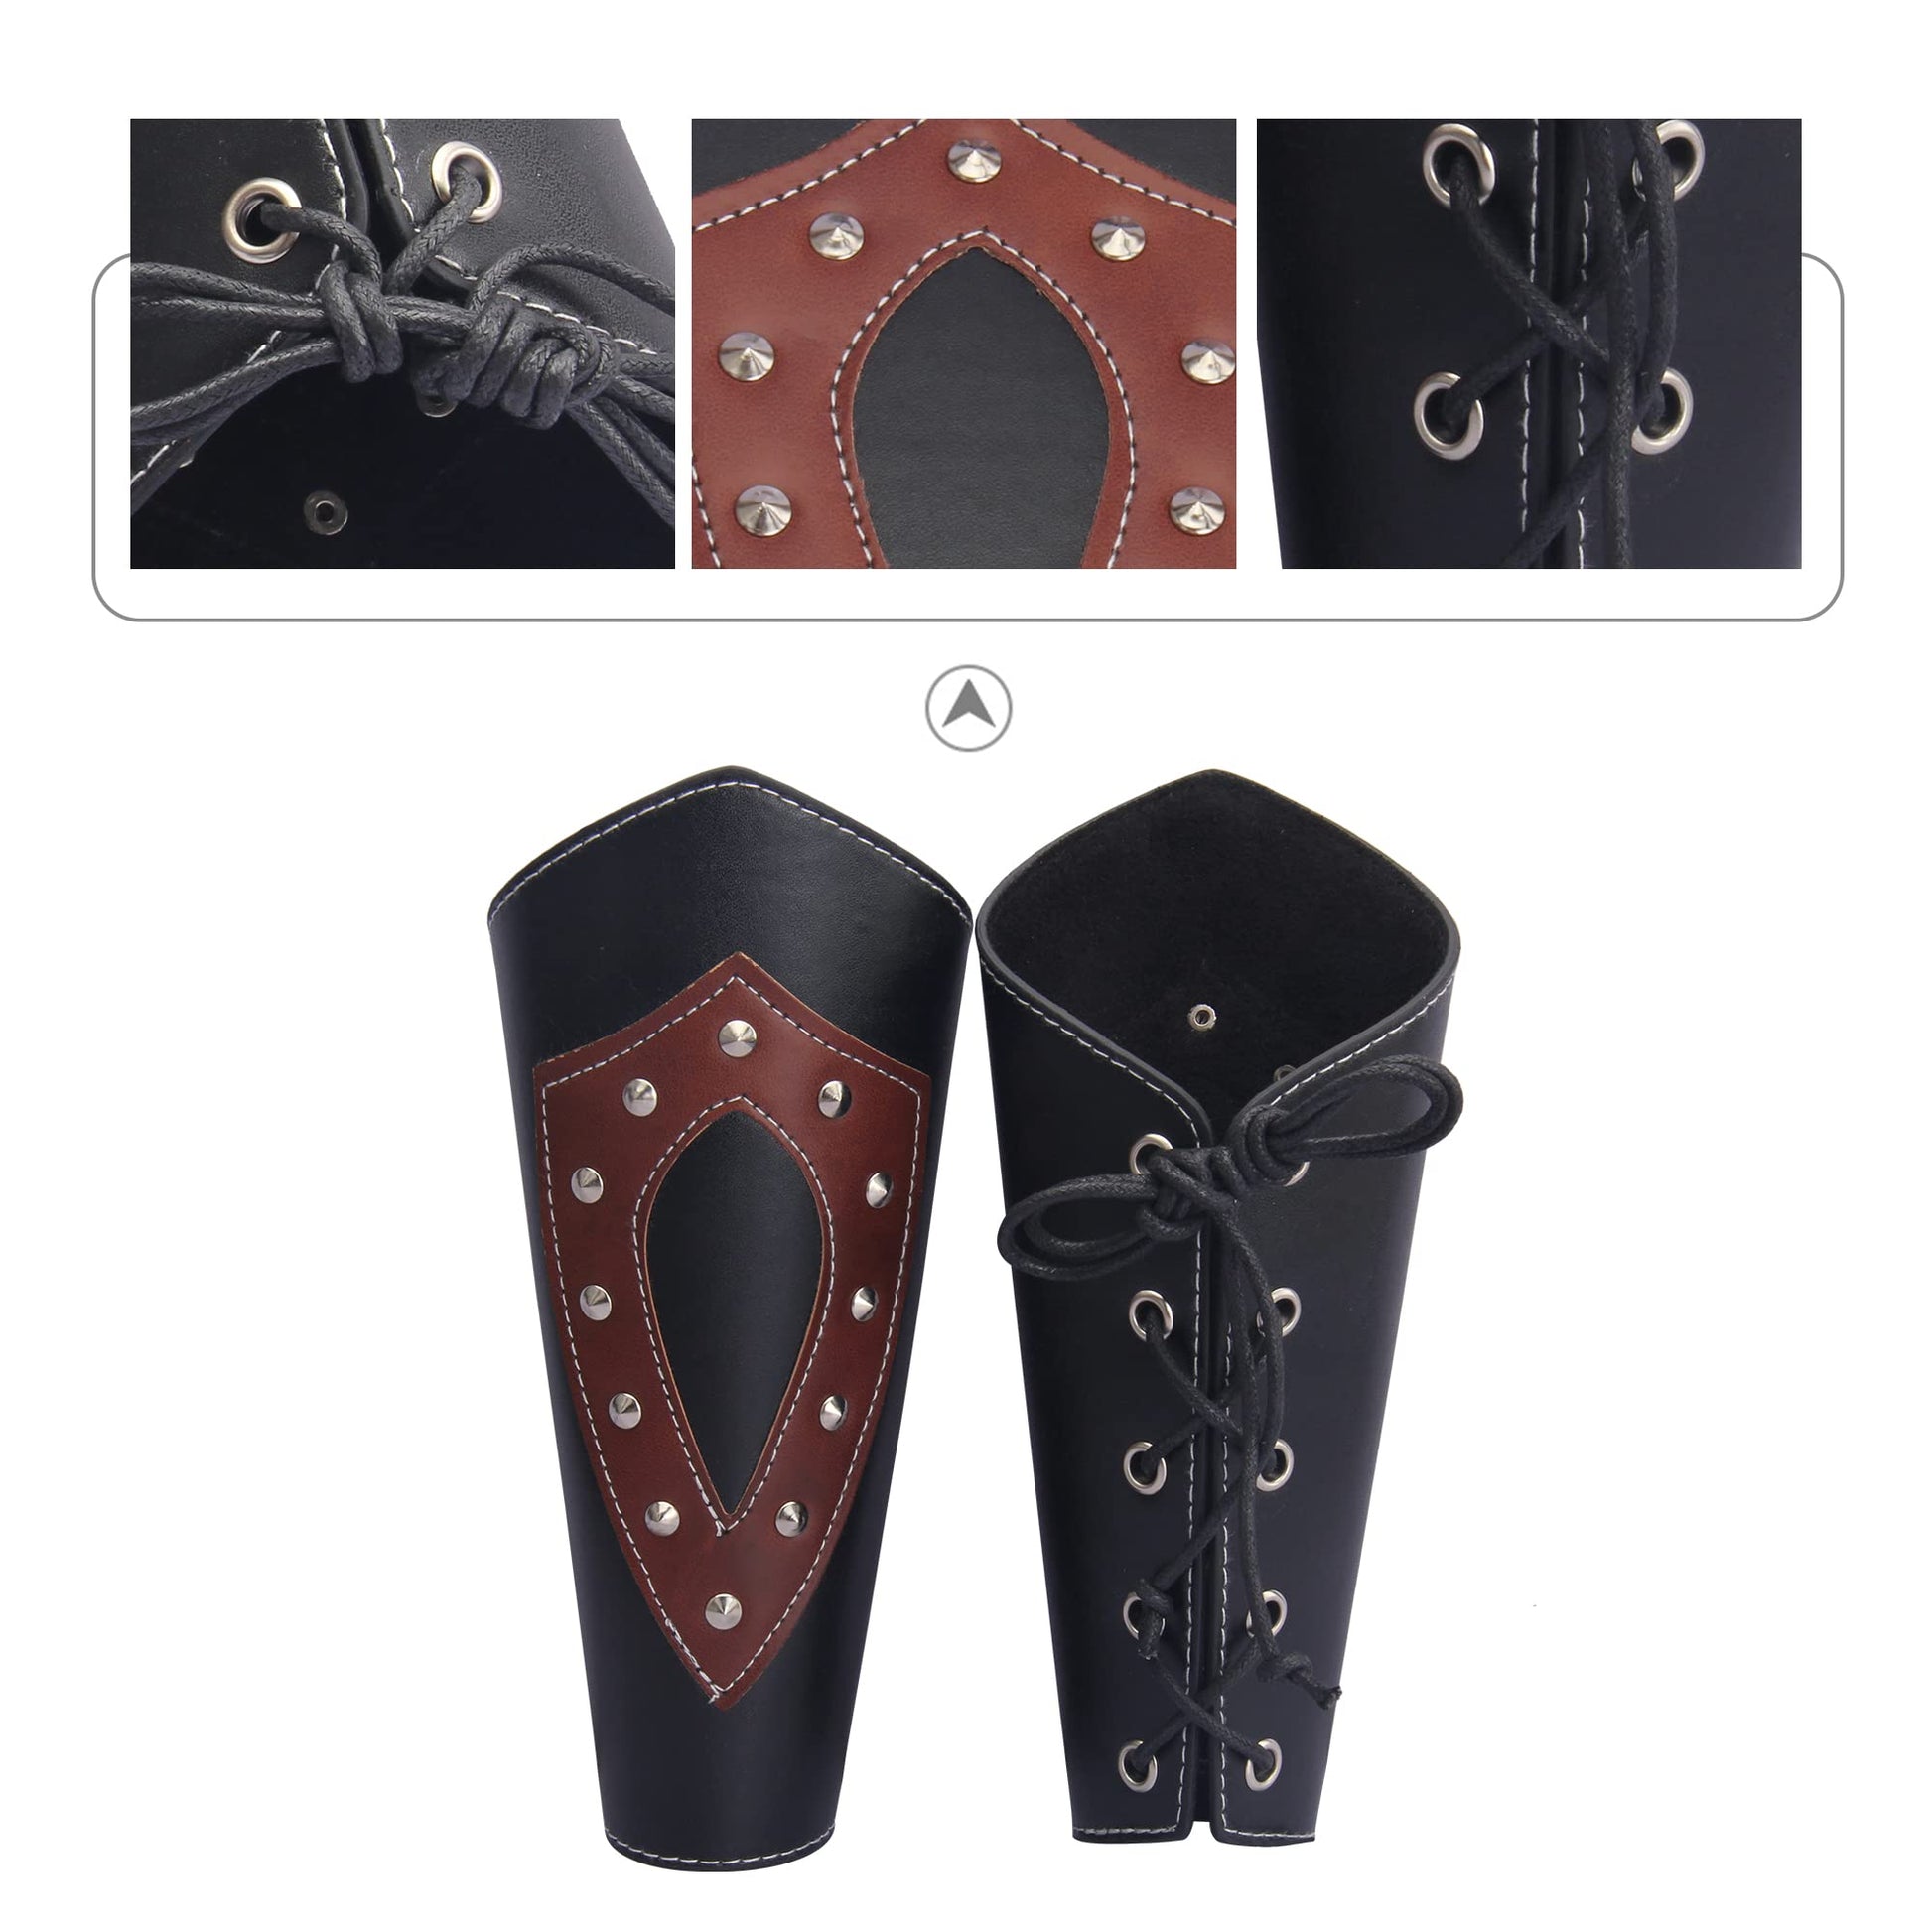 Celtic Boar Leather Arm Bracers Medieval Leather Bracers Leather Vambraces  DK6097 -  Denmark